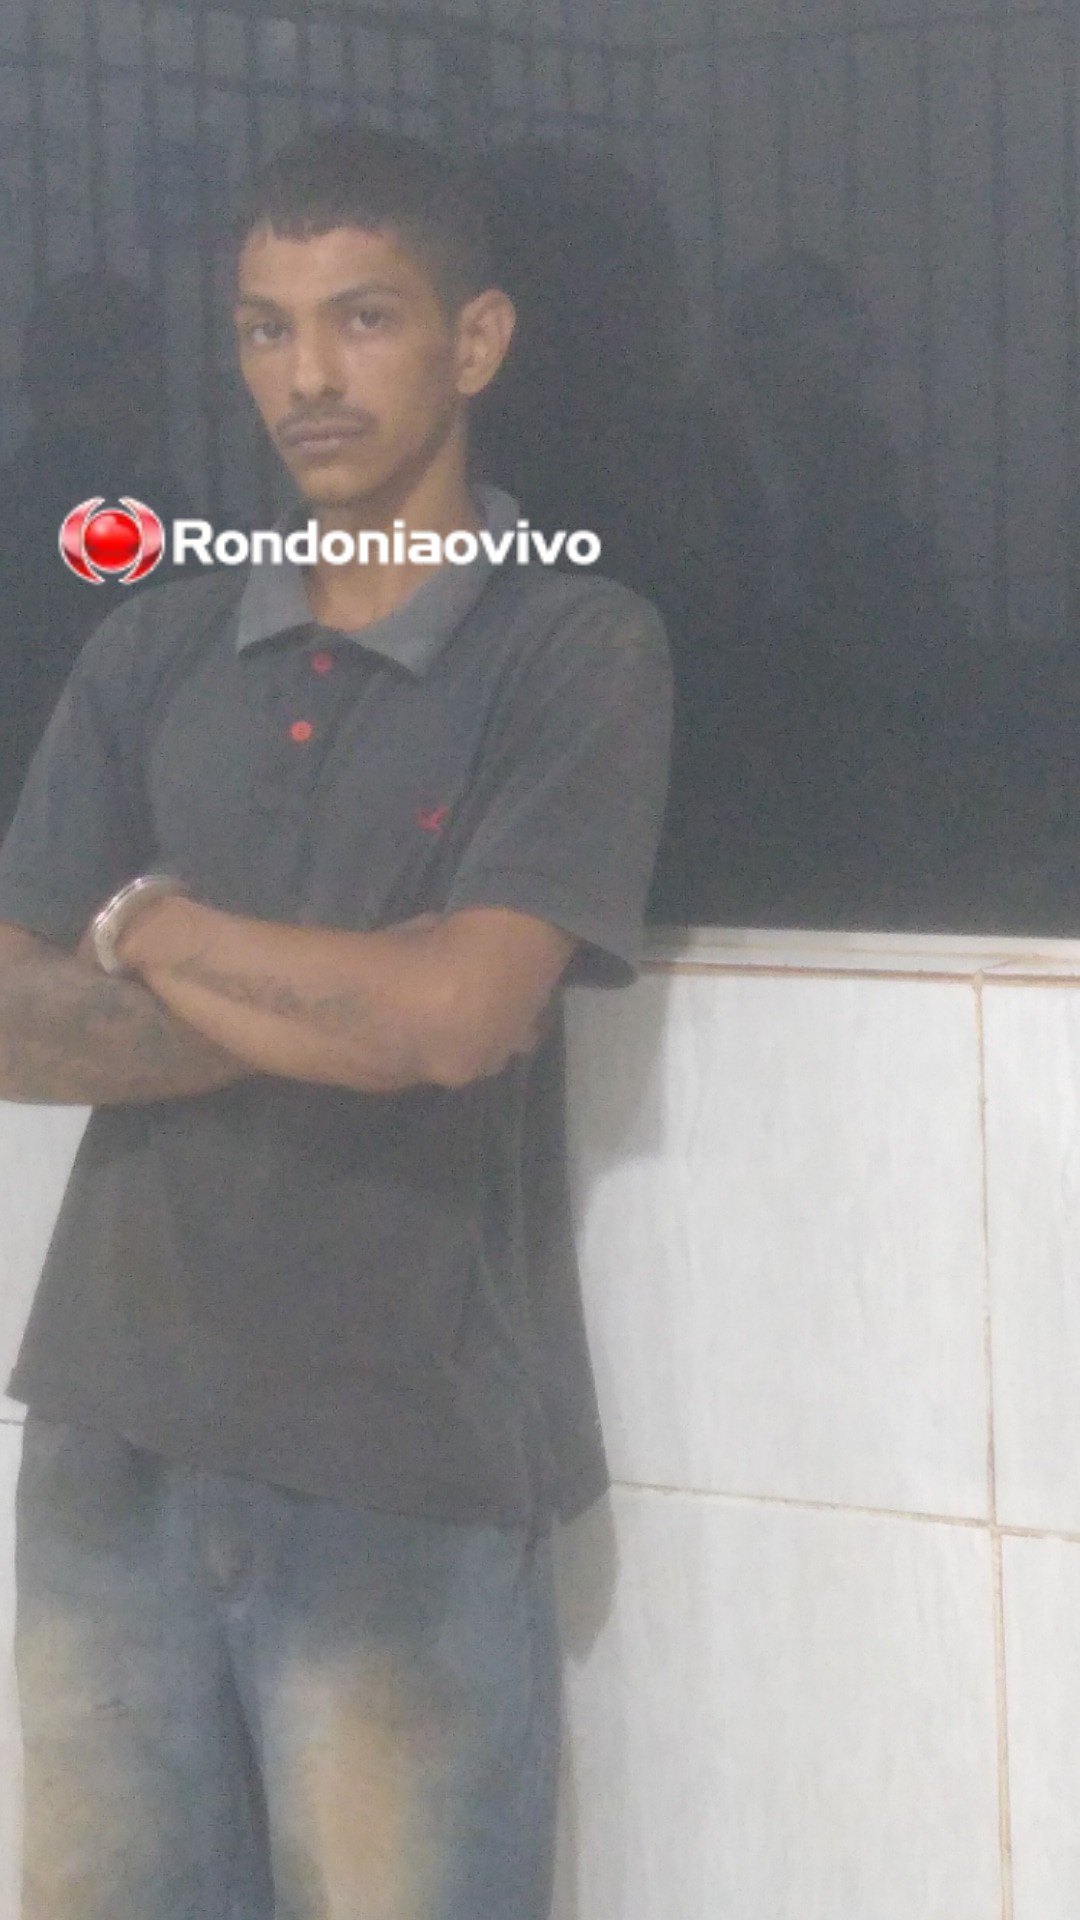 NO SICOOB: Perseguição e tiroteio acaba com ladrão de banco preso em Porto Velho